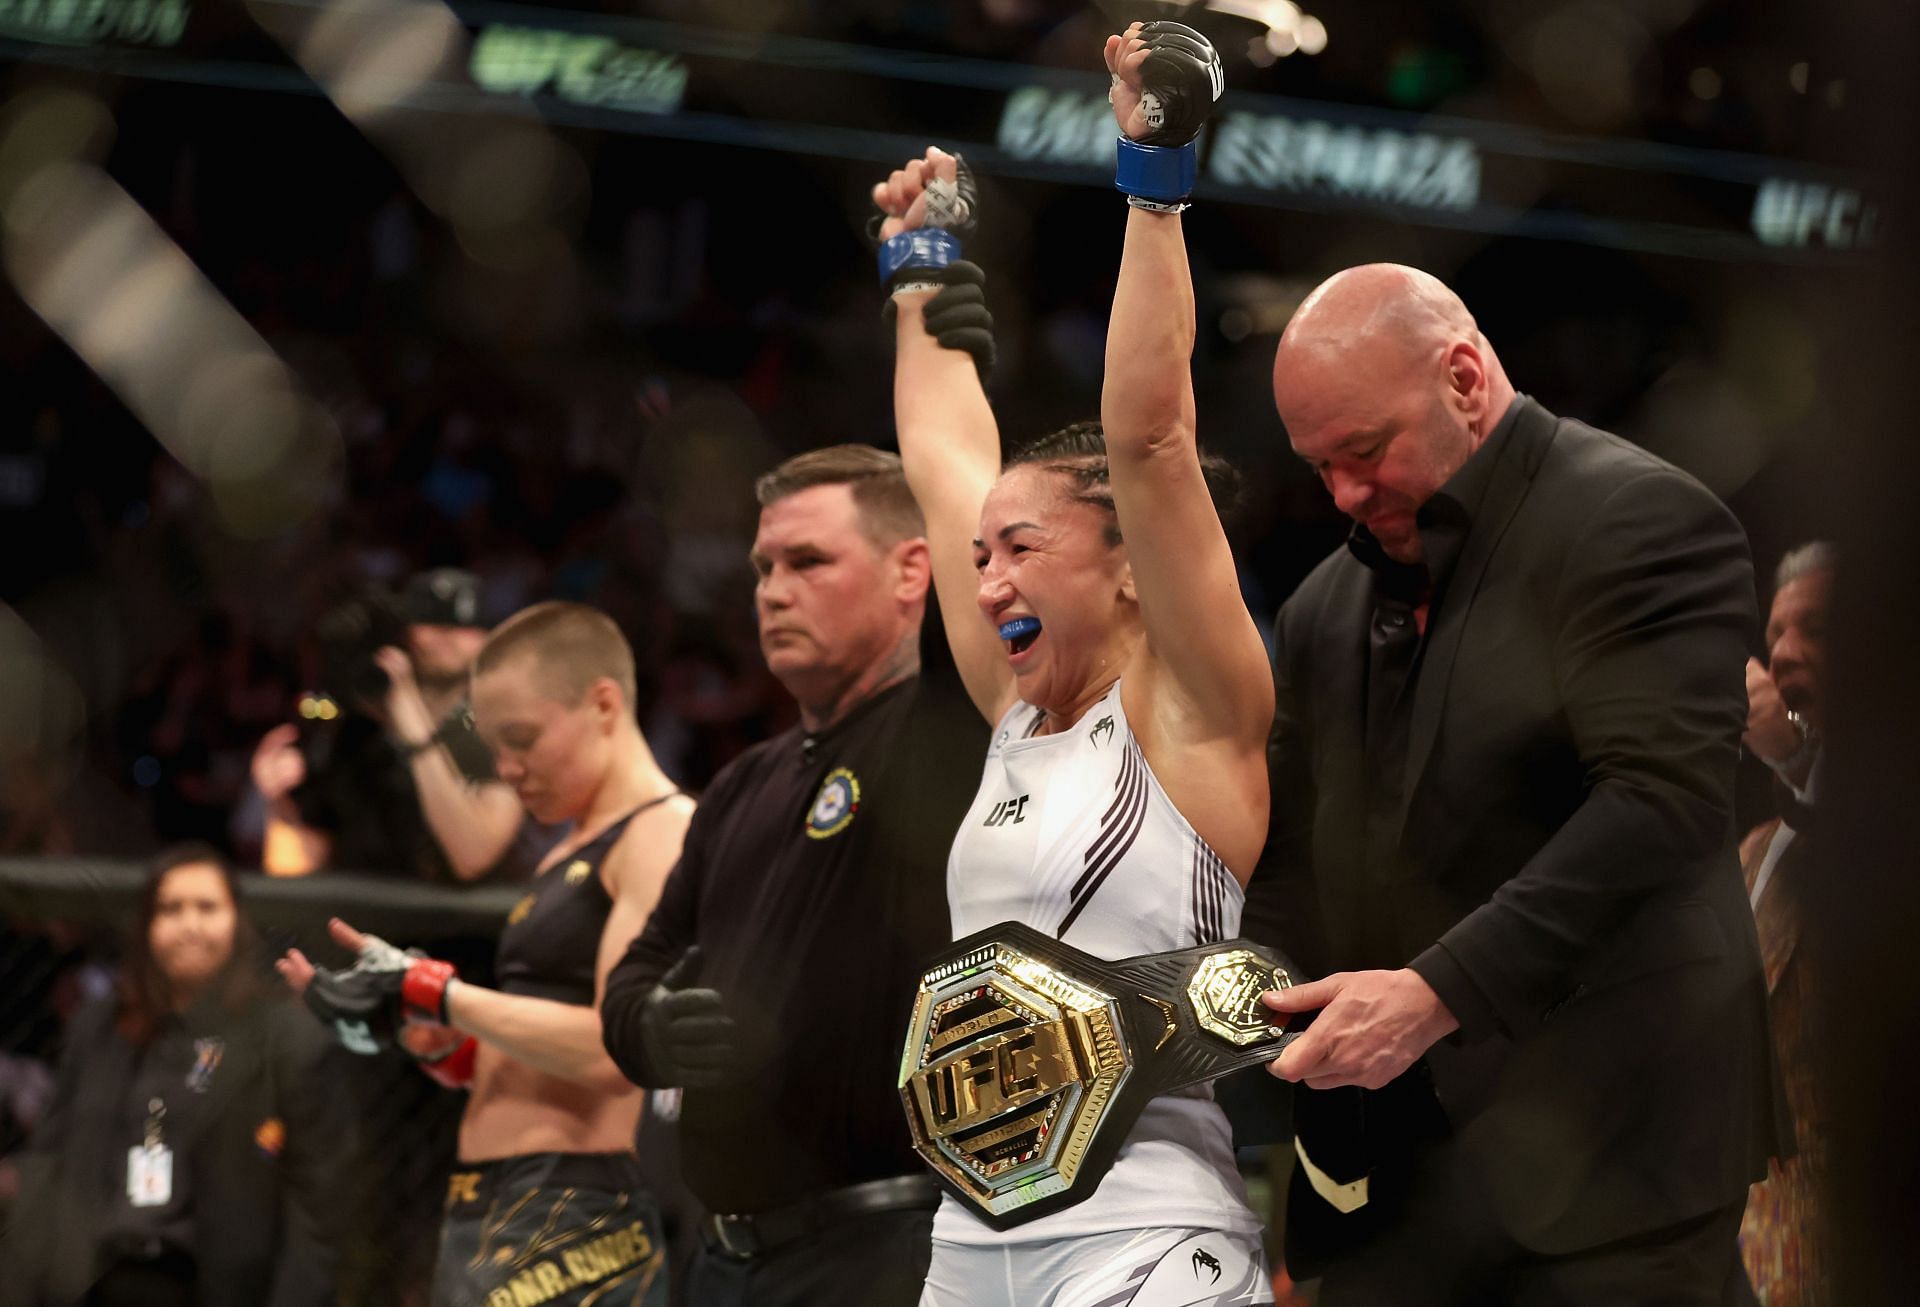 Carla Esparza defeated Rose Namajunas at UFC 274